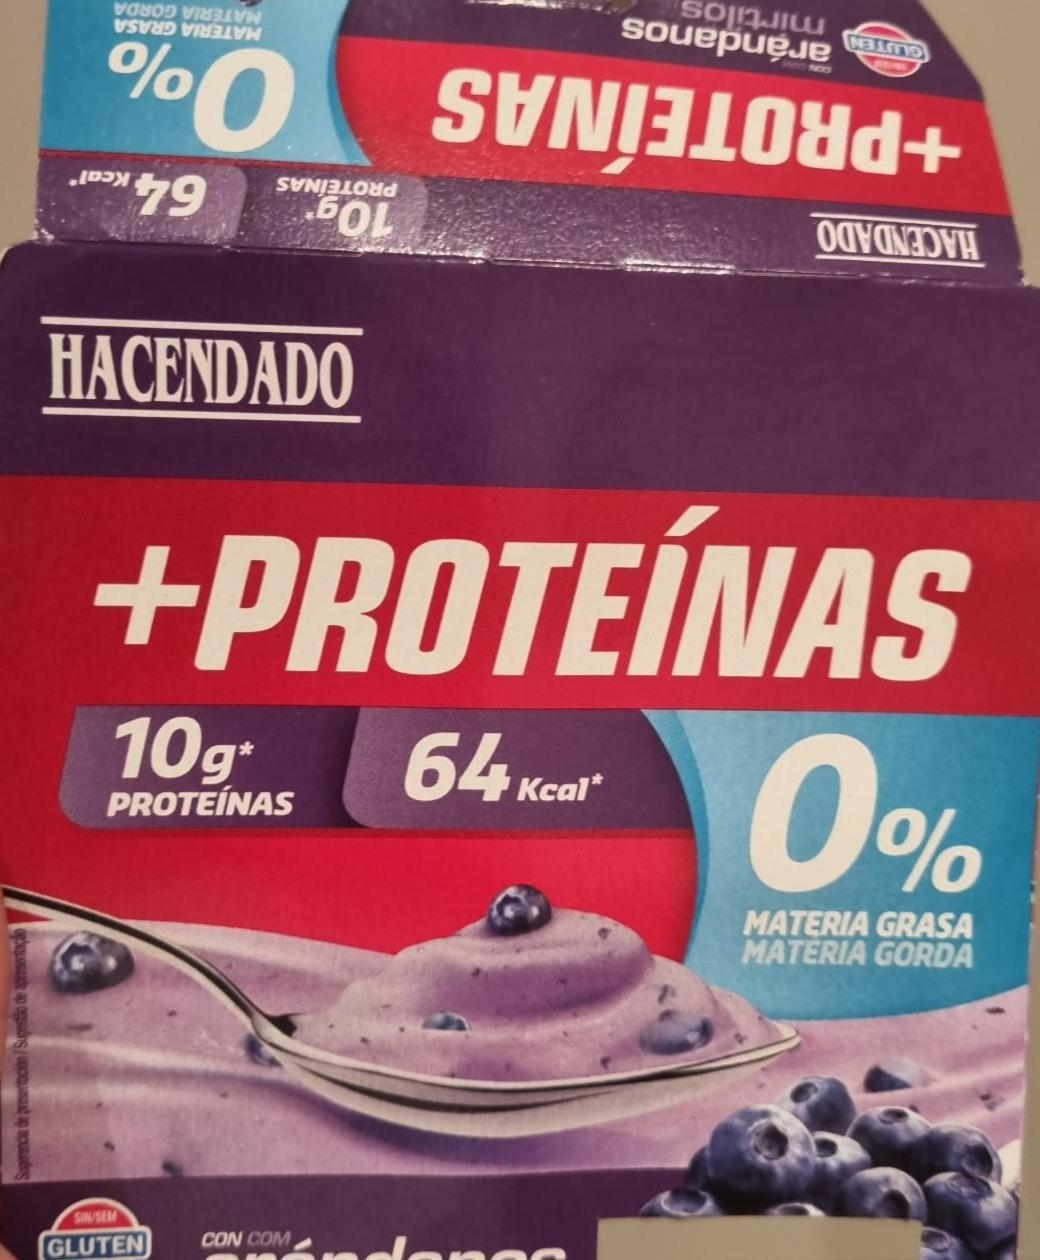 Fotografie - Yogur con arándanos + proteínas Hacendado